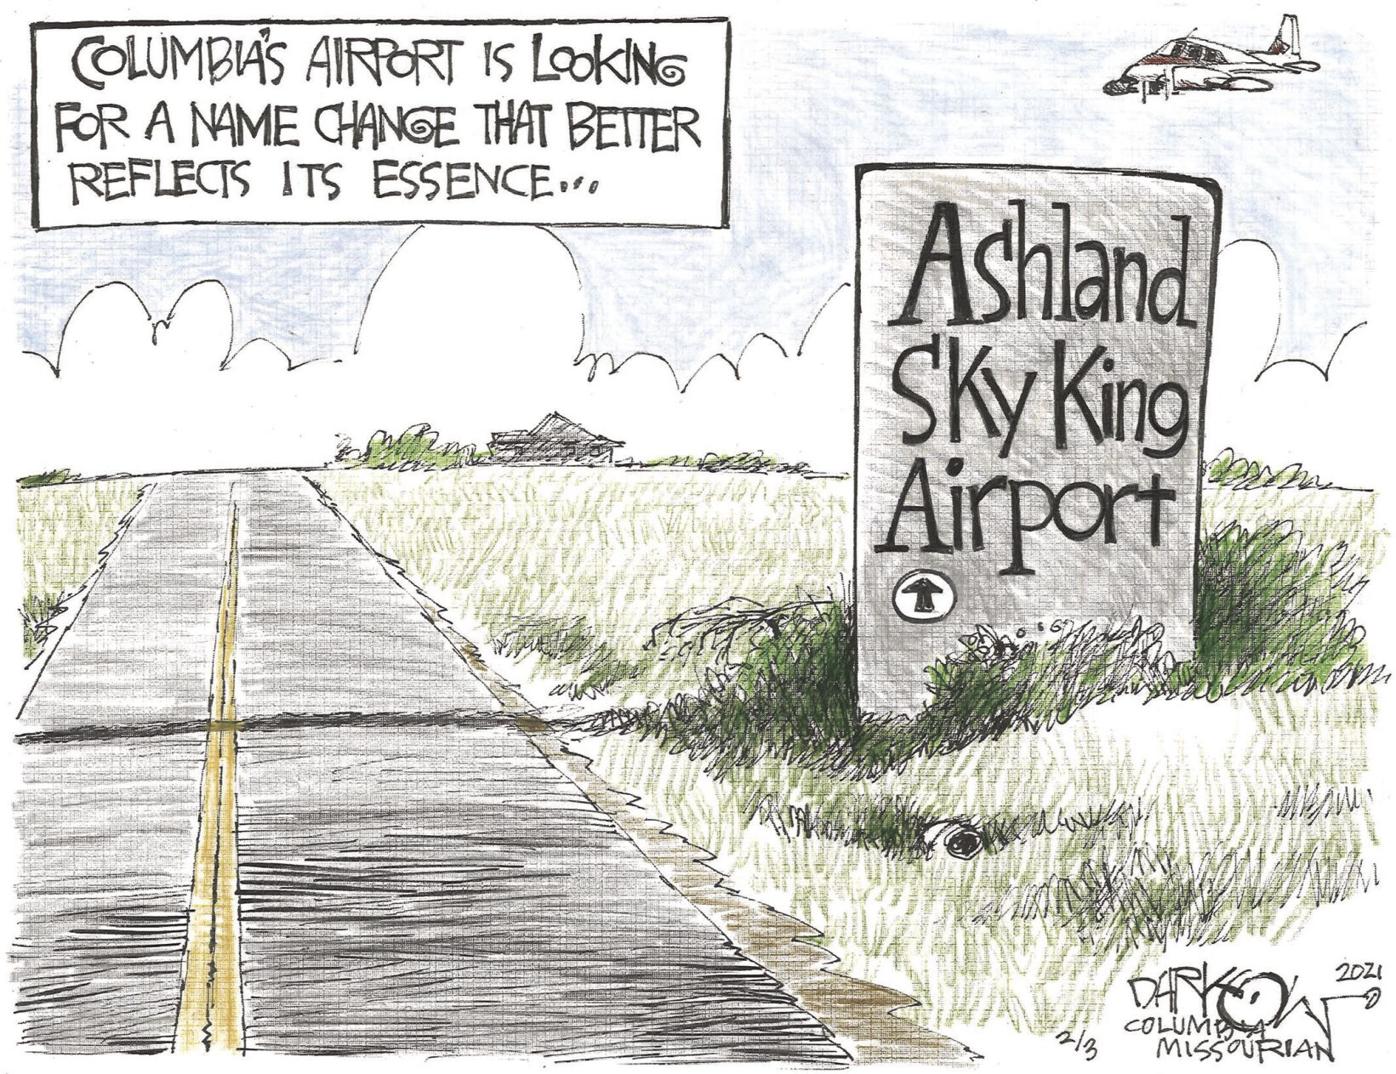 Renaming the airport